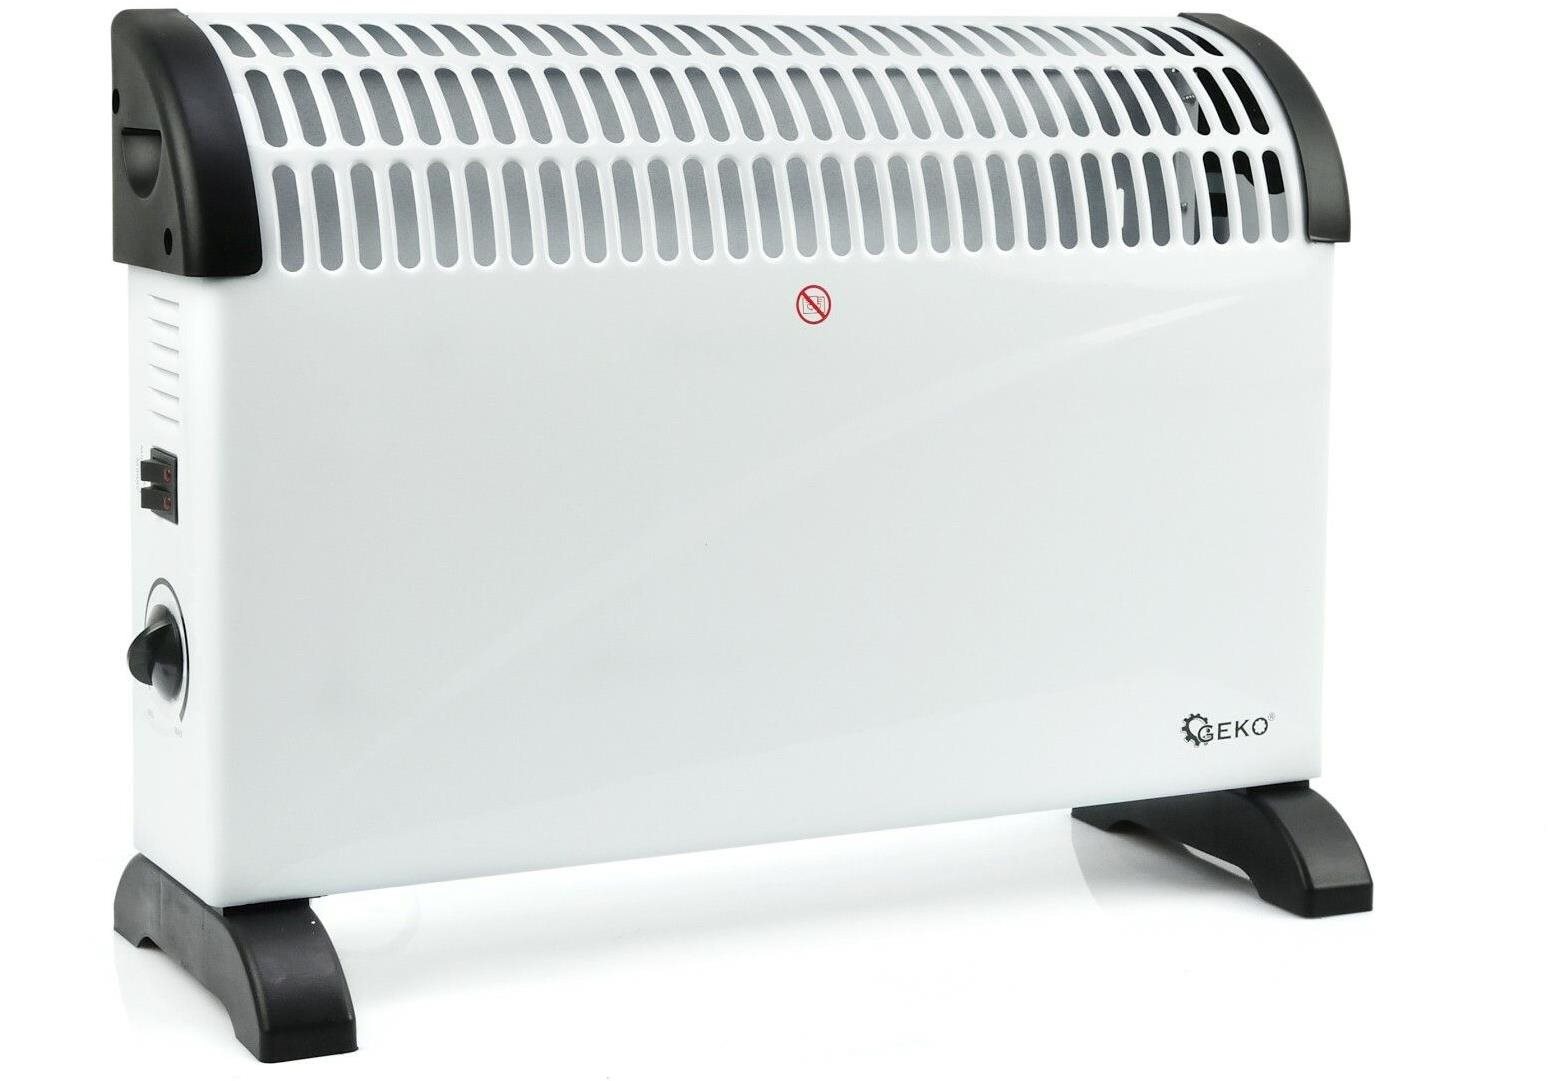 Geko konvektorový ohřívač s termostatem 2000W